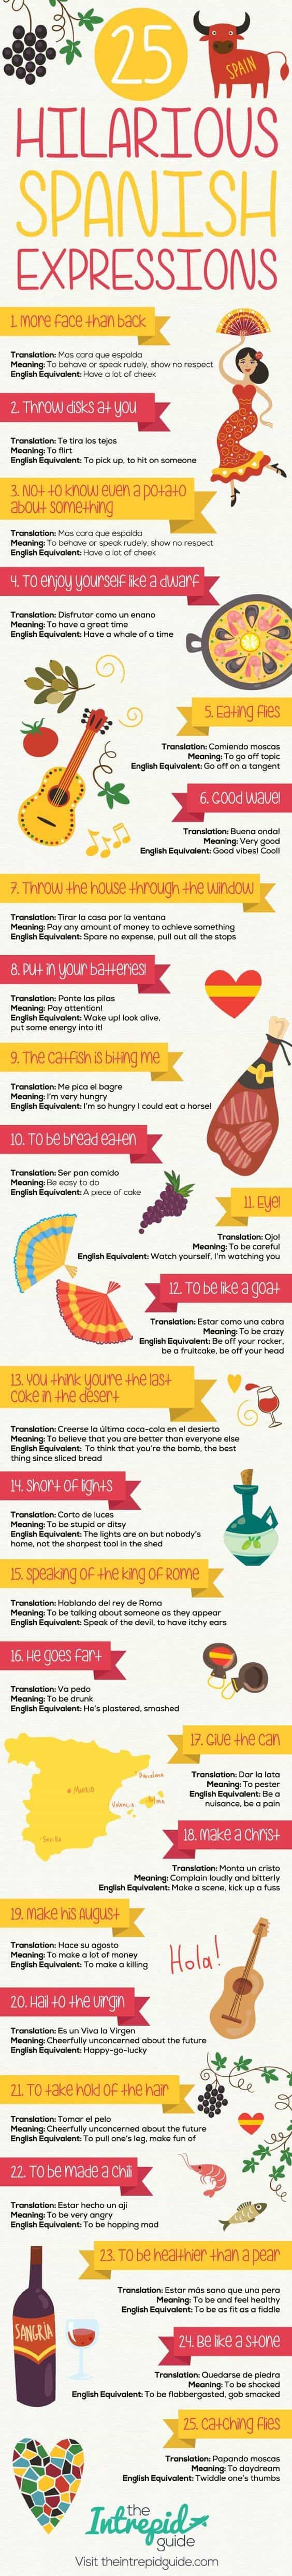 Teach English In Spain